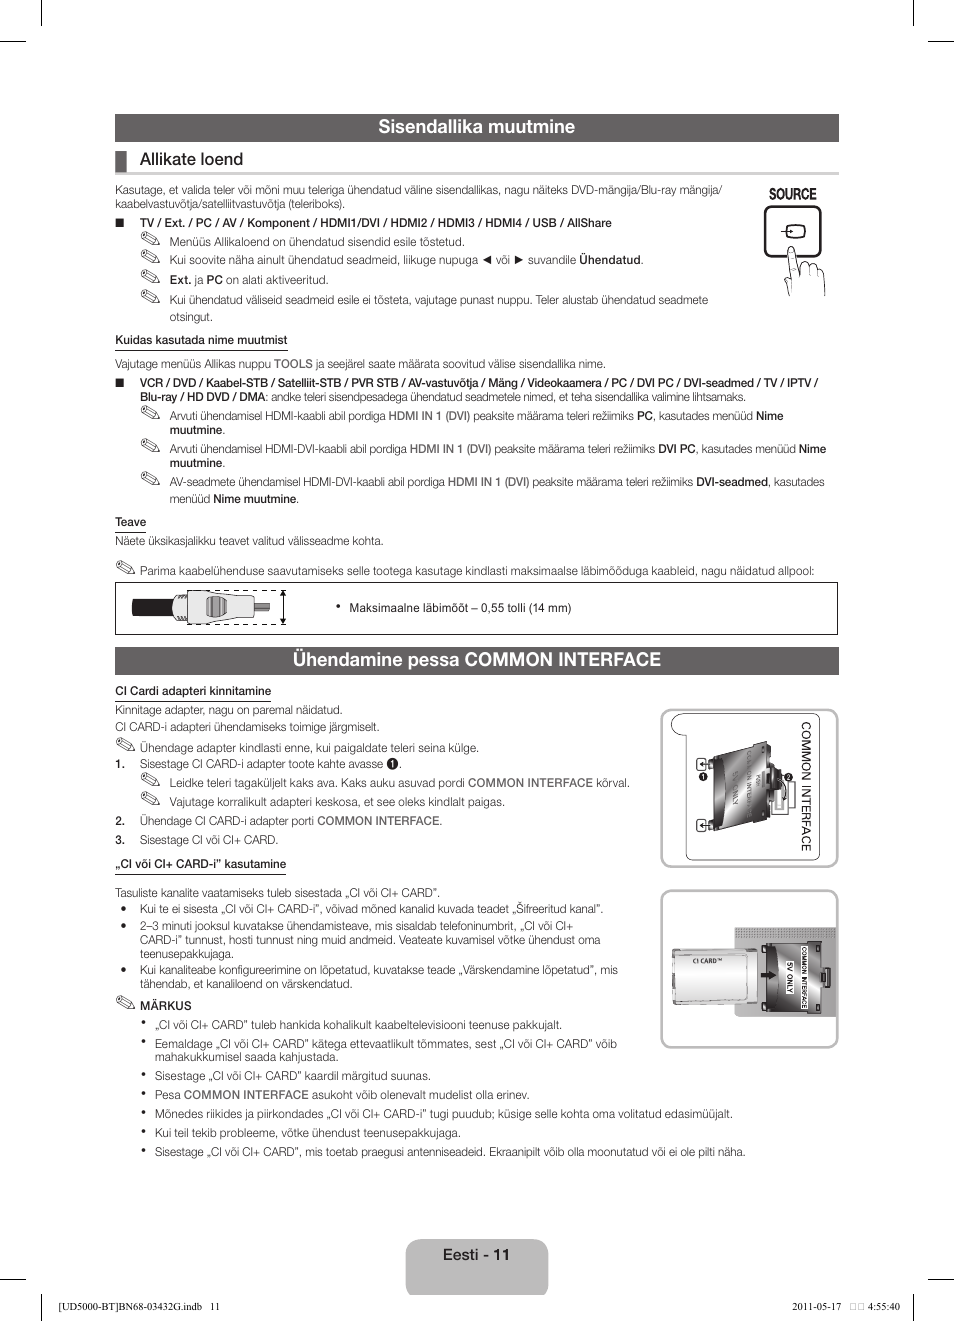 Sisendallika muutmine, Ühendamine pessa common interface | Samsung  UE40D5000PW User Manual | Page 119 / 163